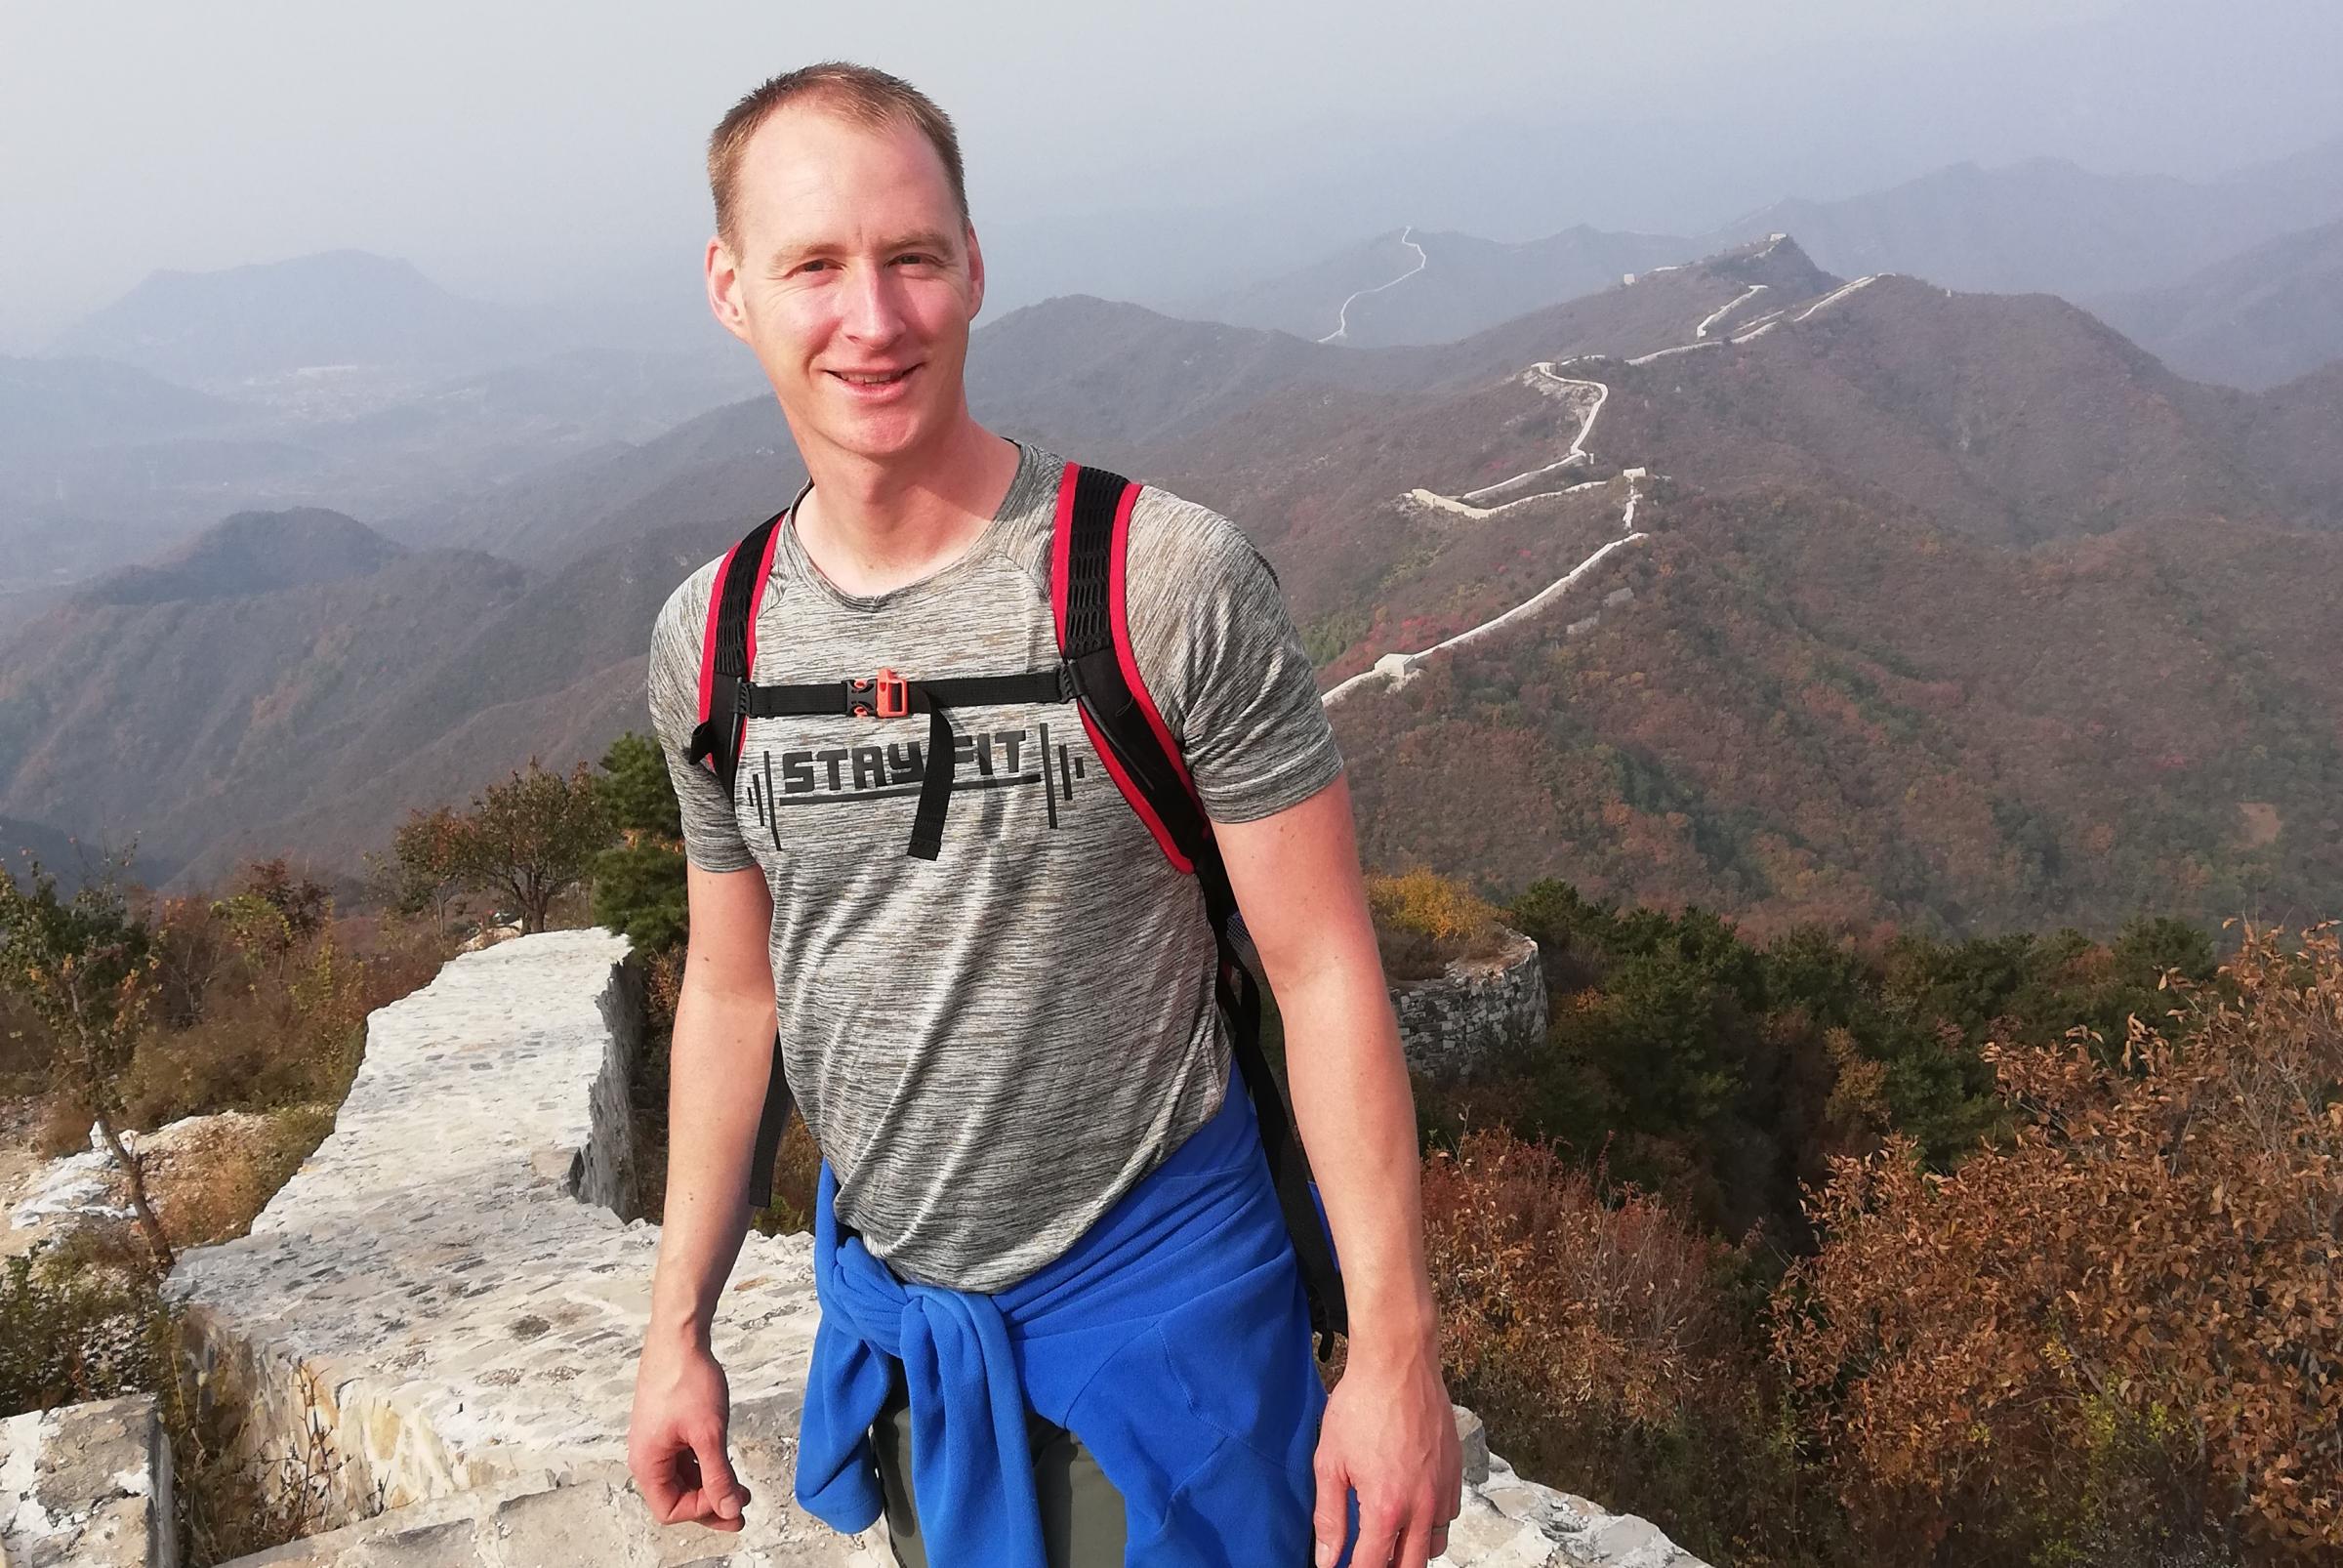 Dan's China trek raises £30,000 for Rosemere